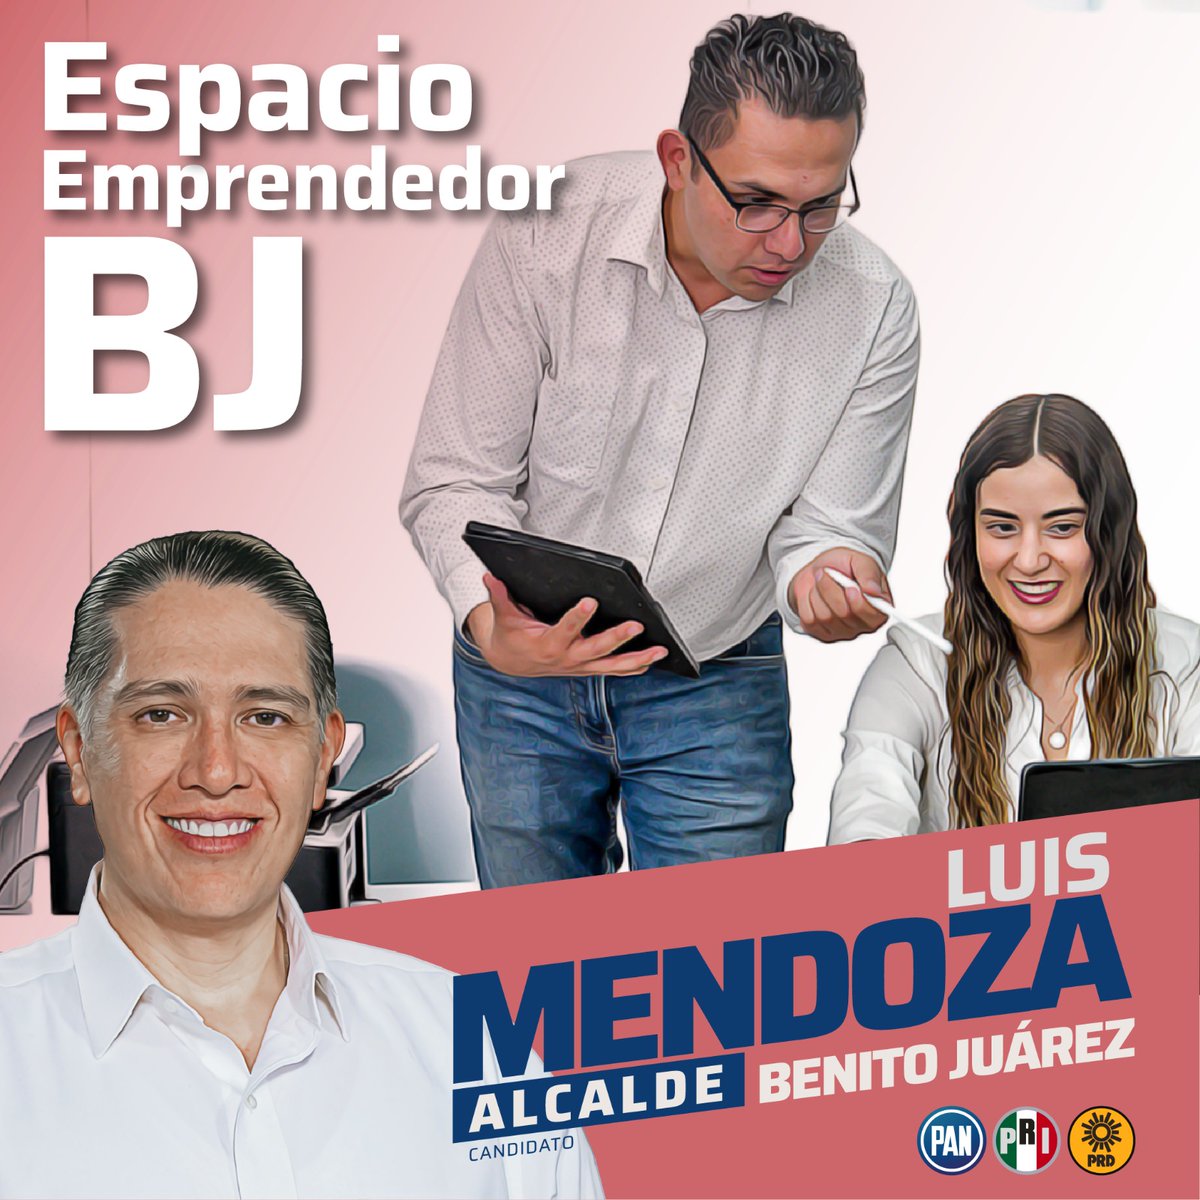 El “Espacio Emprendedor Benito Juarez” buscará promover que hombres y mujeres benitojuarenses crezcan sus negocios y alcancen sus metas a través de capacitación. #AlcadiaCompetitiva